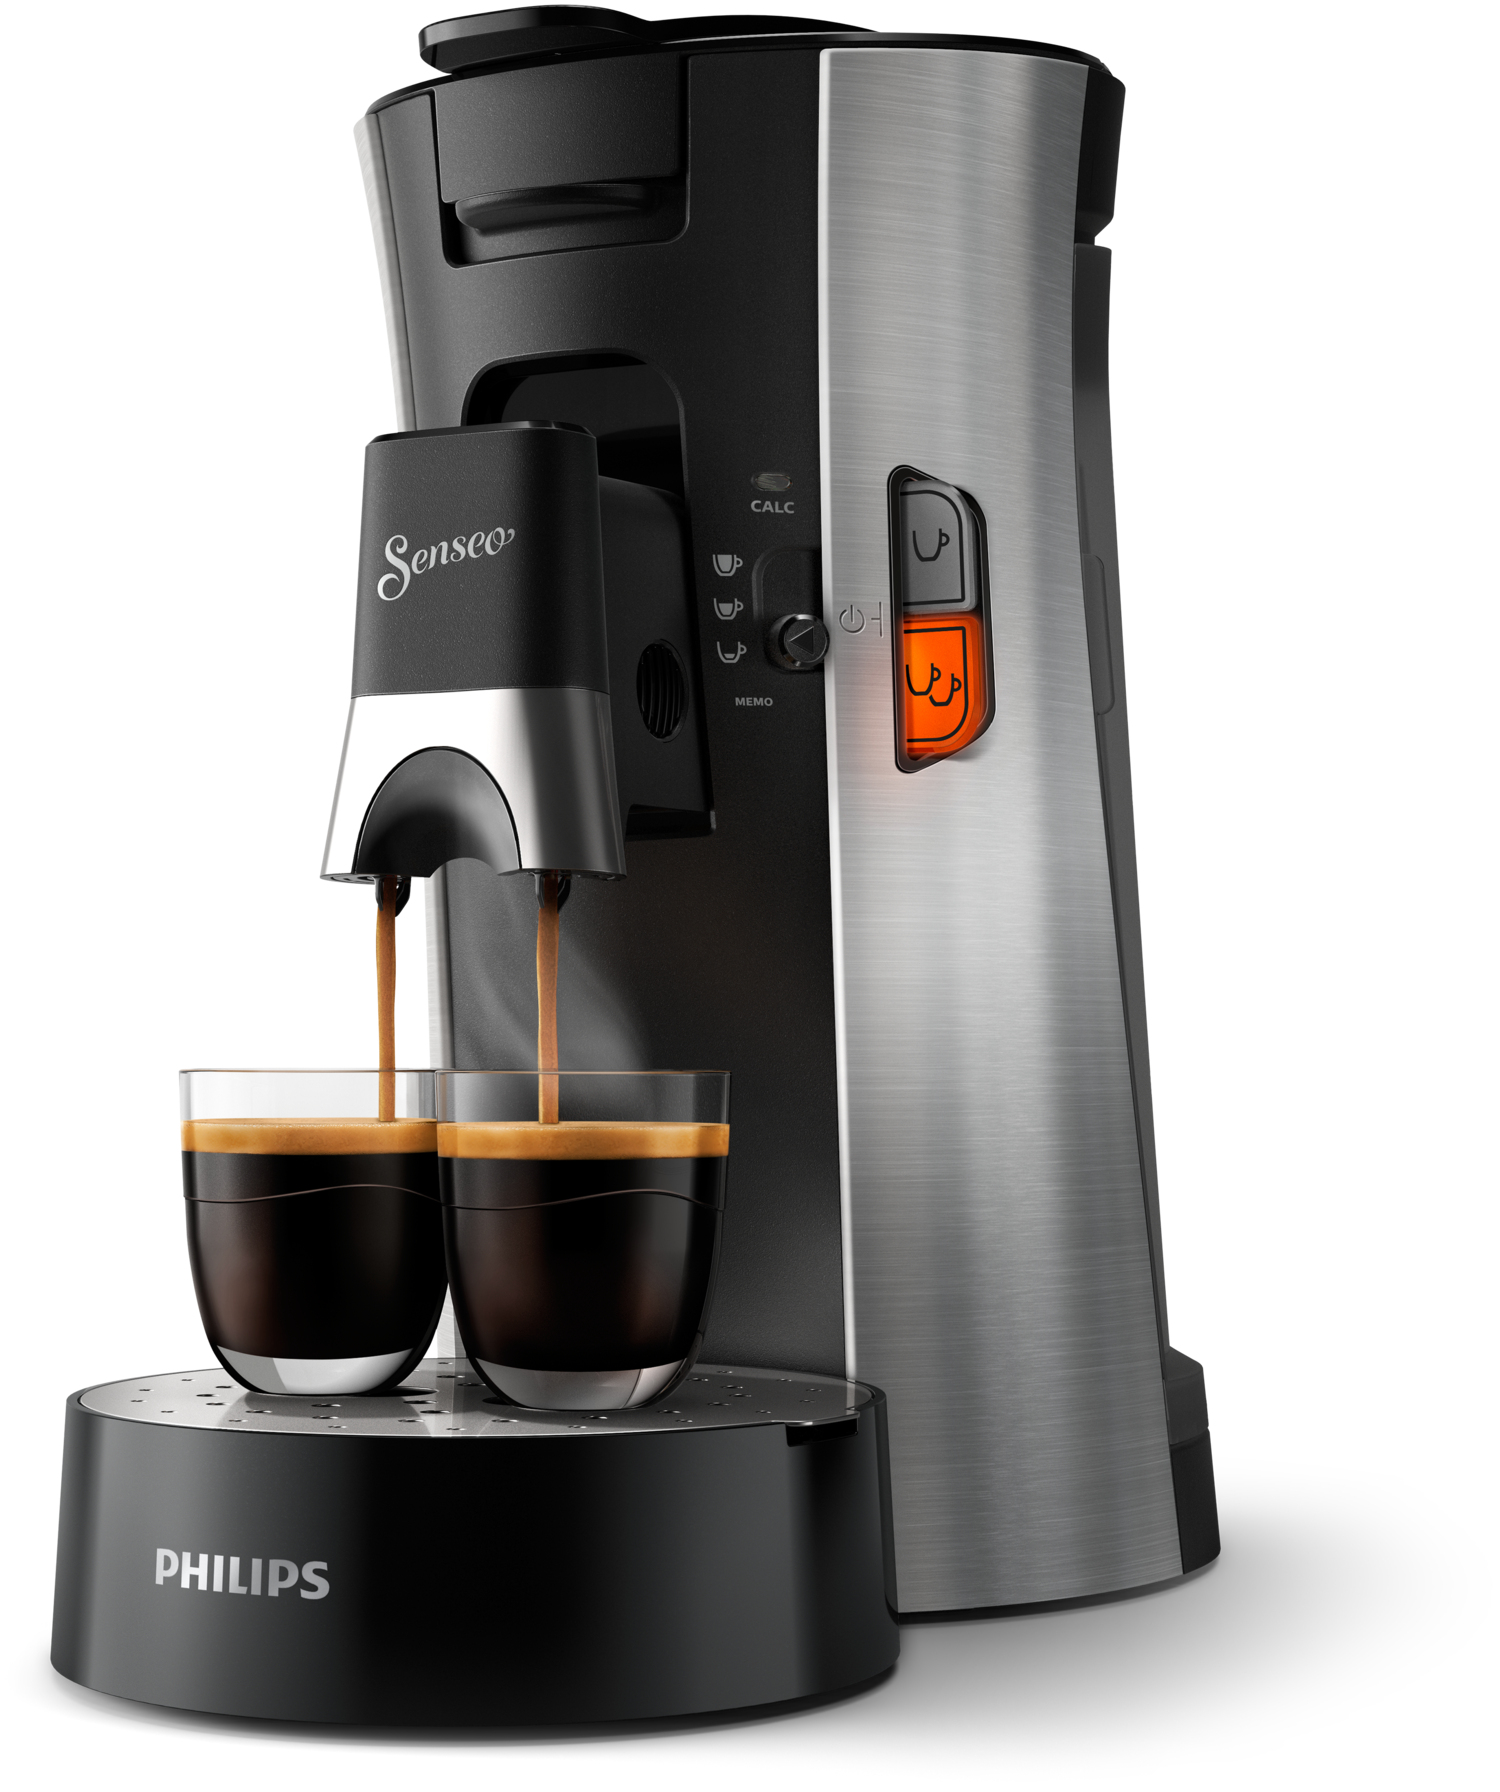 Philips by Versuni CSA250/10 coffee maker